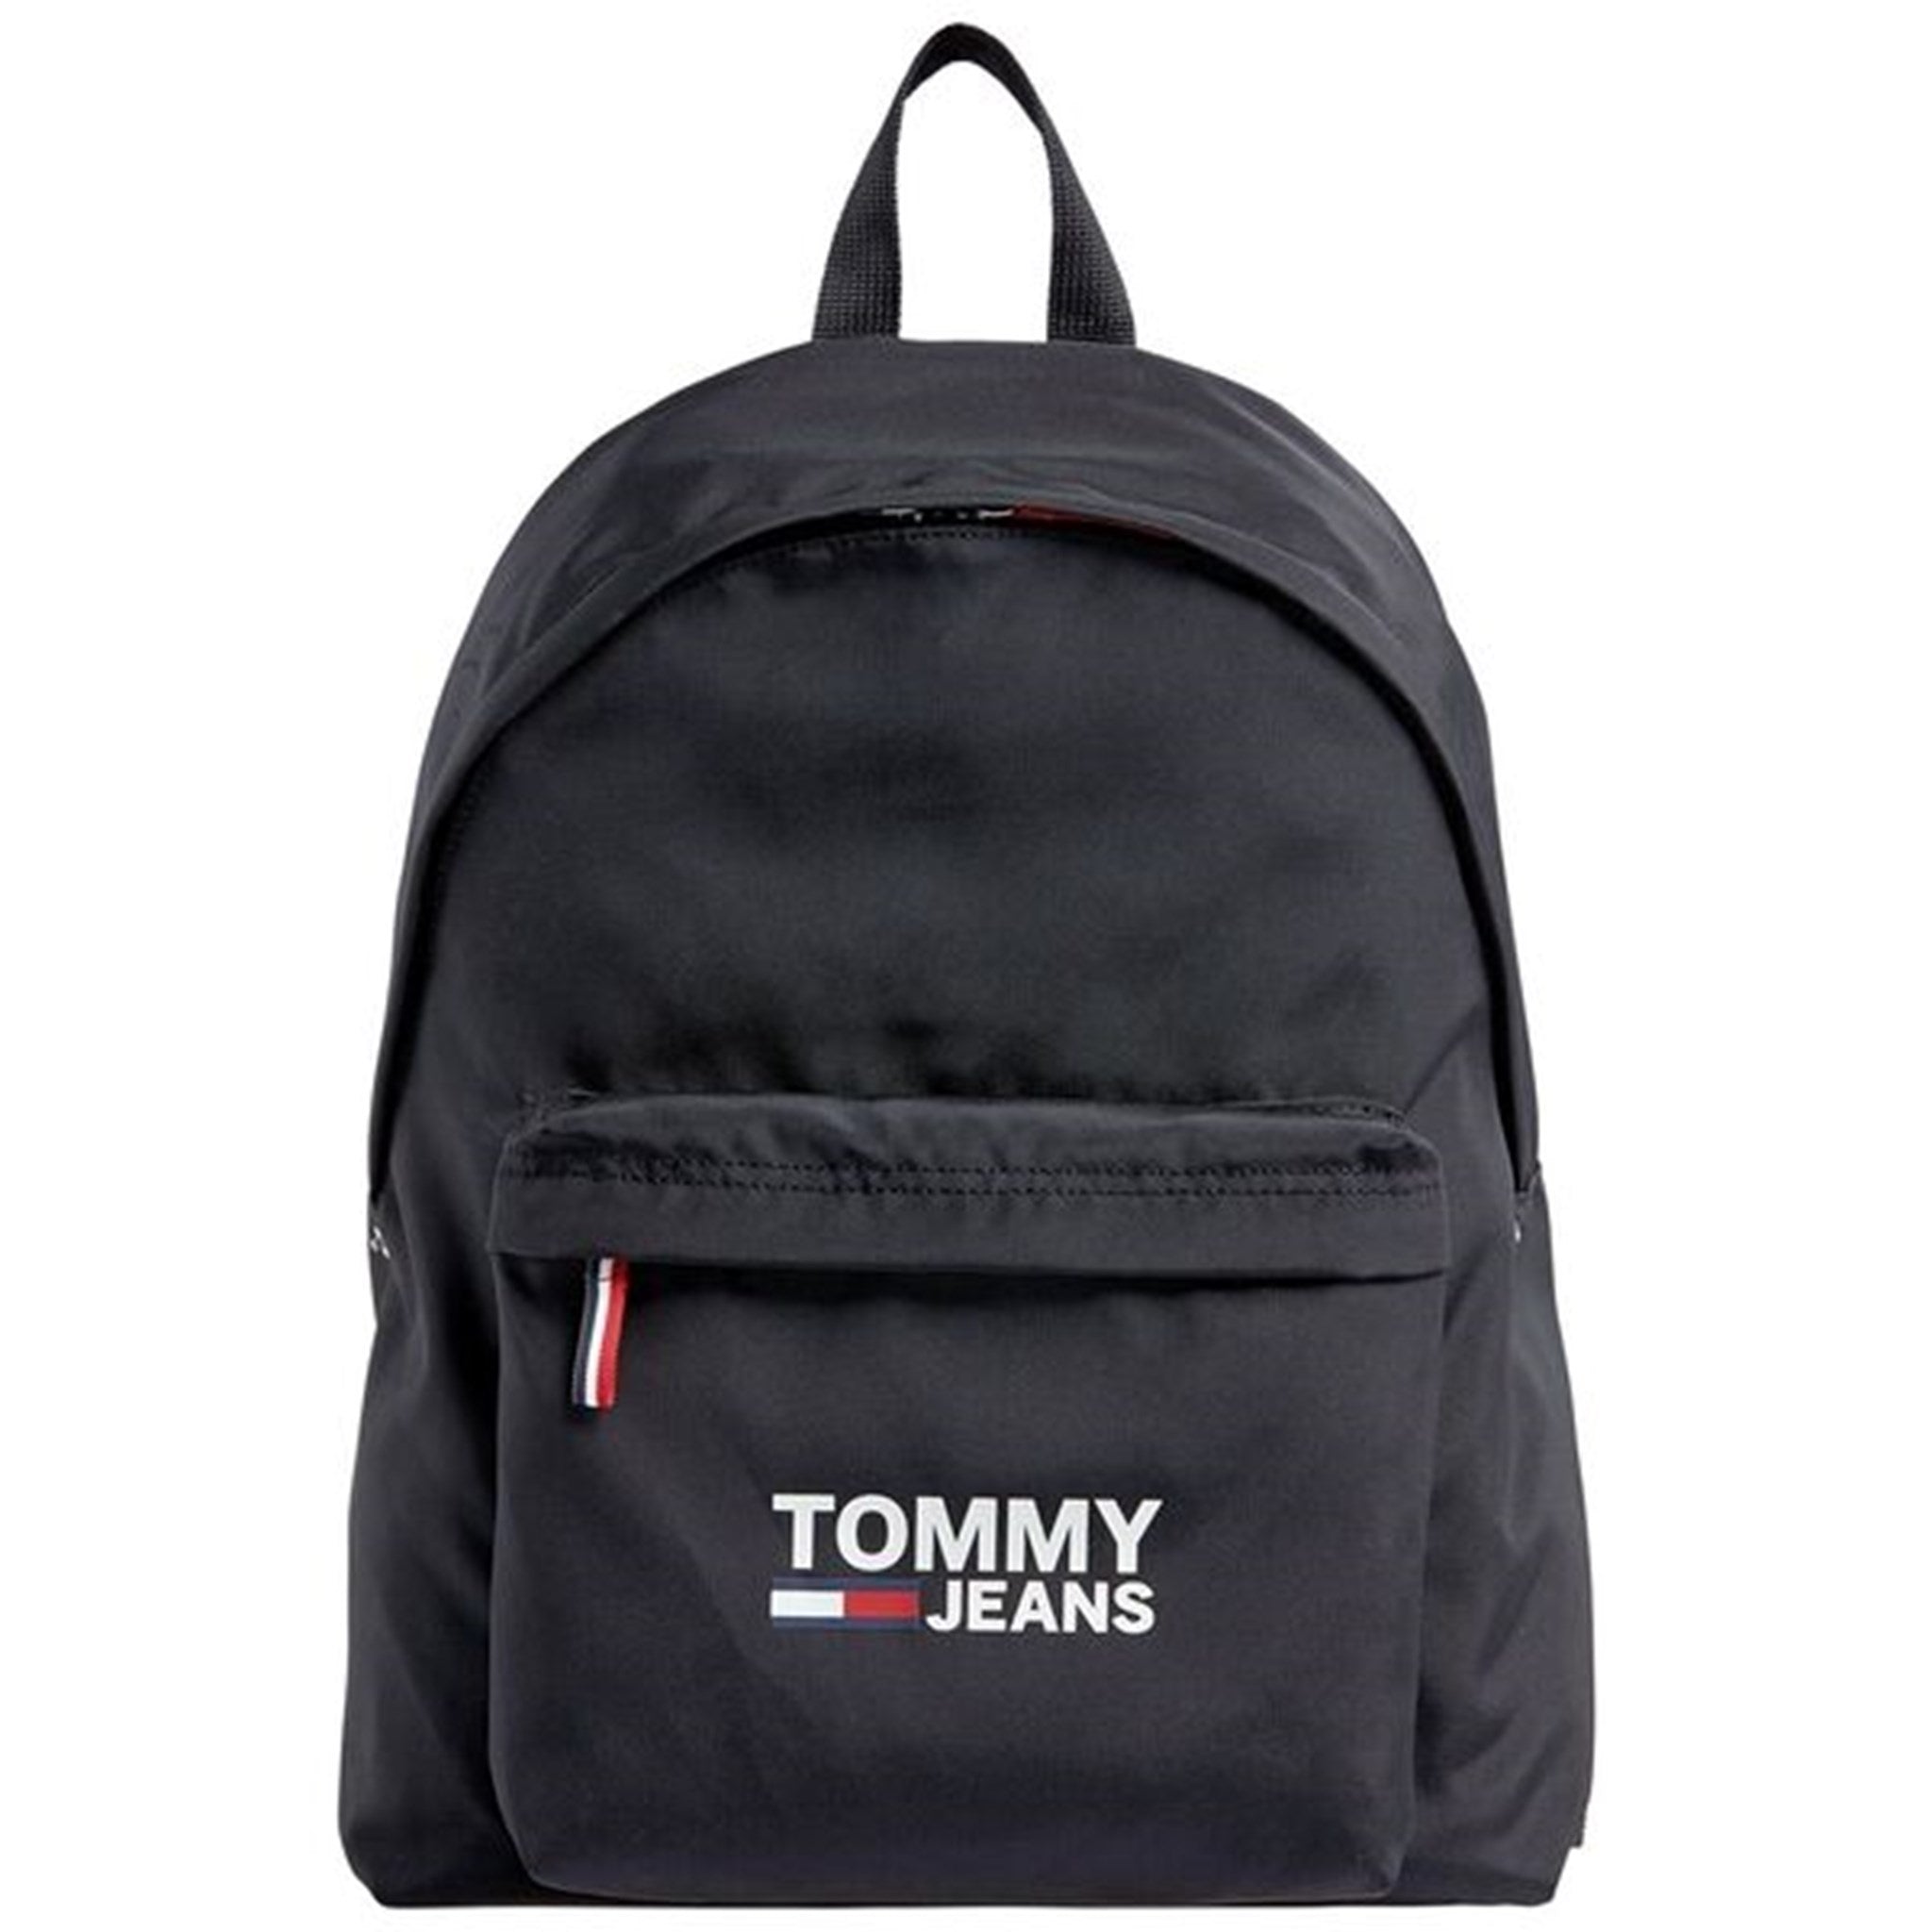 Tommy Hilfiger Cool City Backpack Black